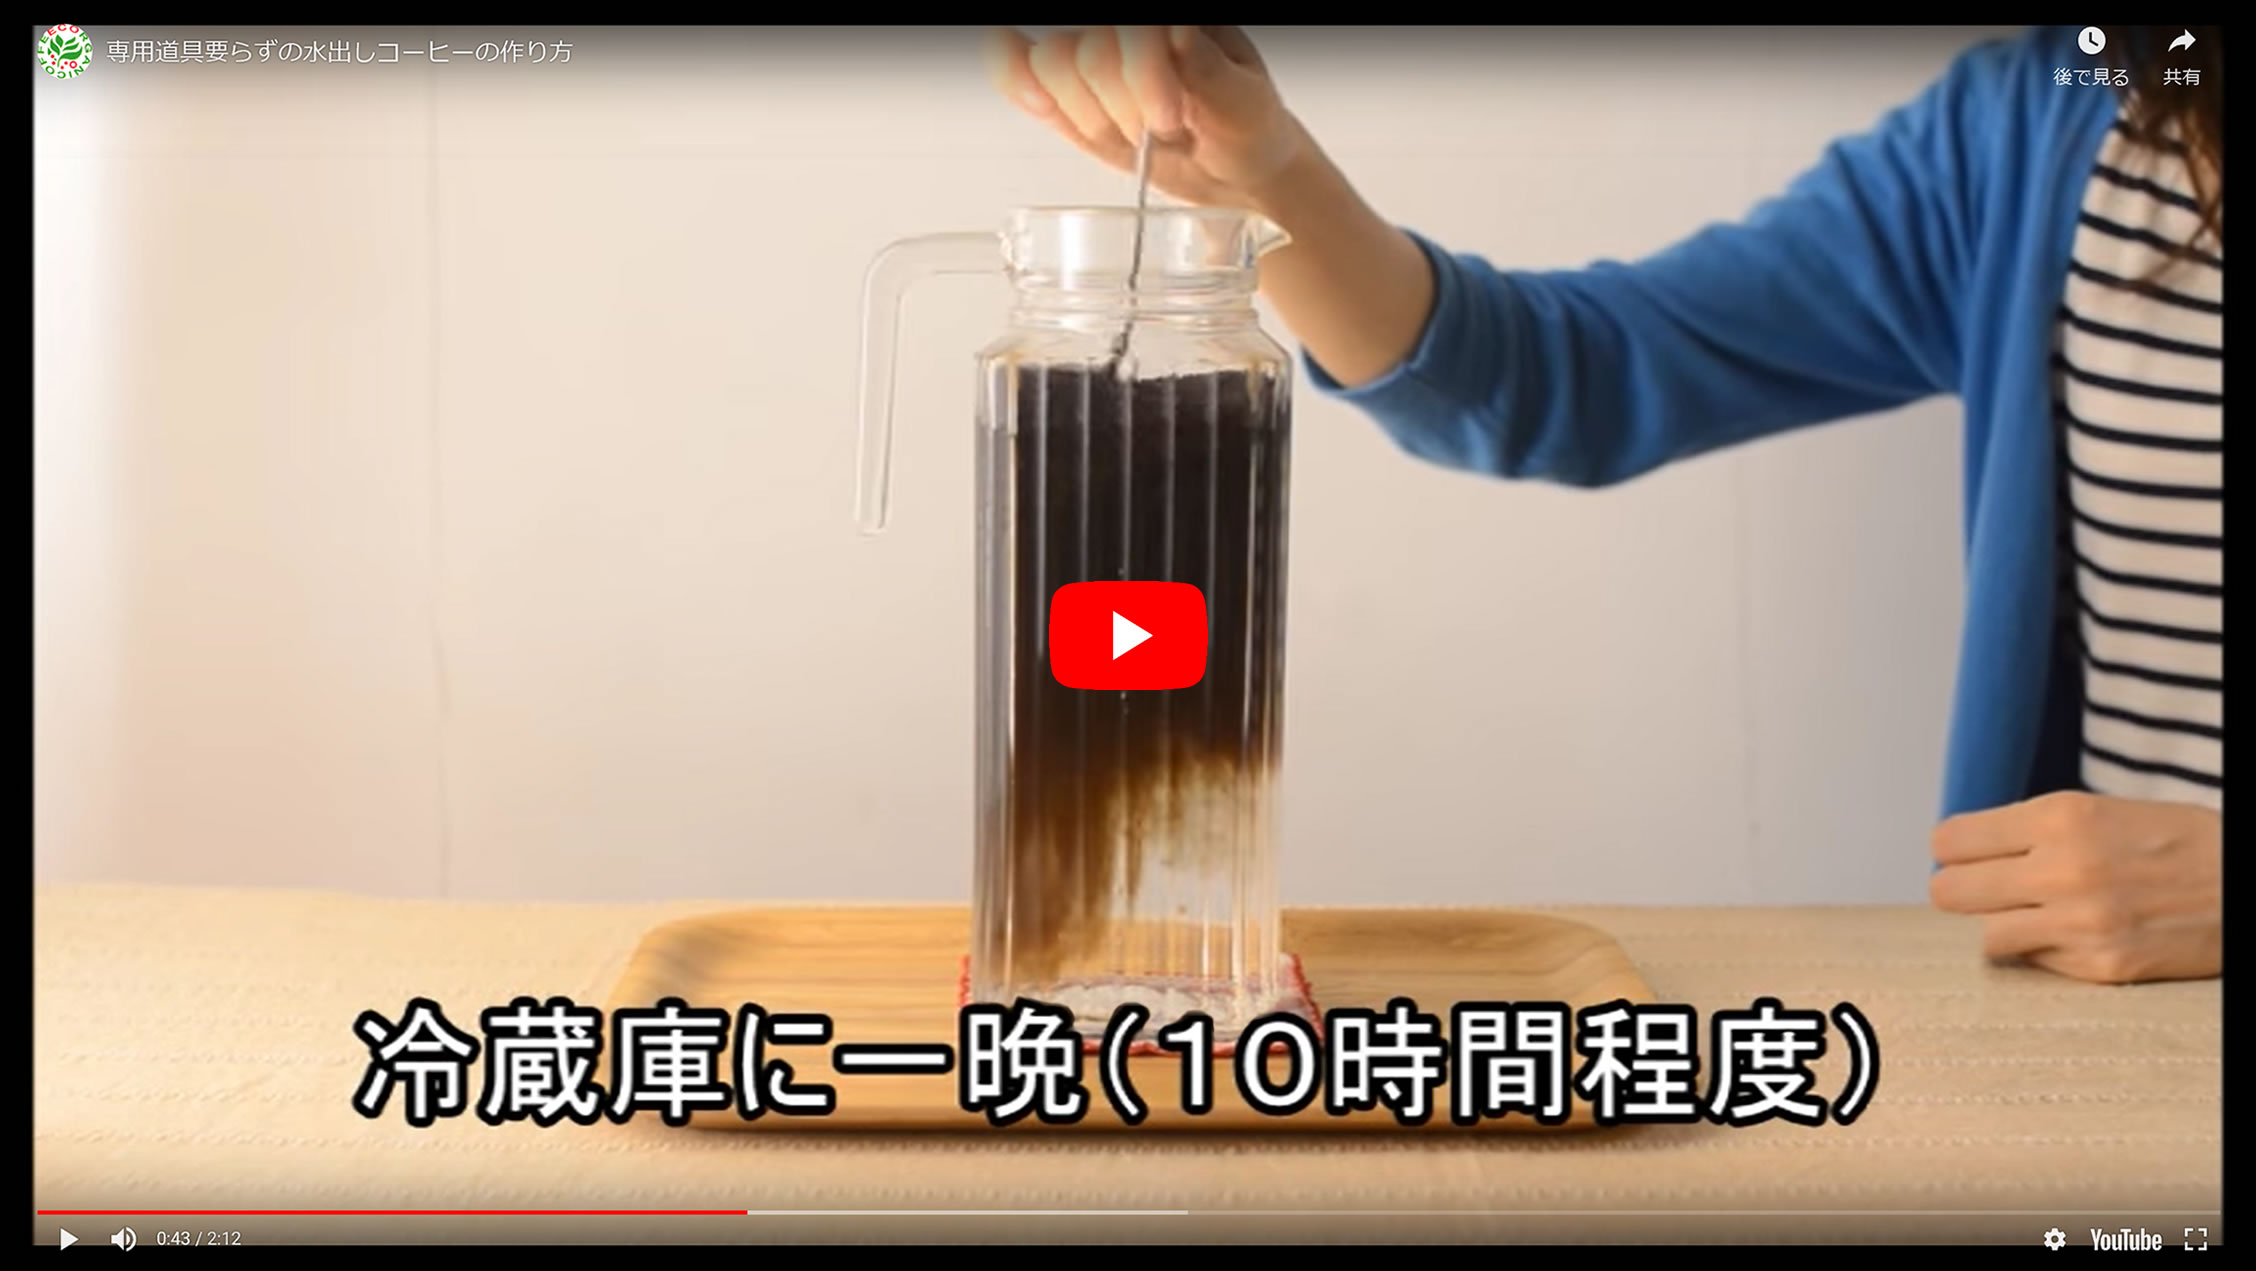 有機栽培水出しコーヒーの作り方動画へのリンク画像